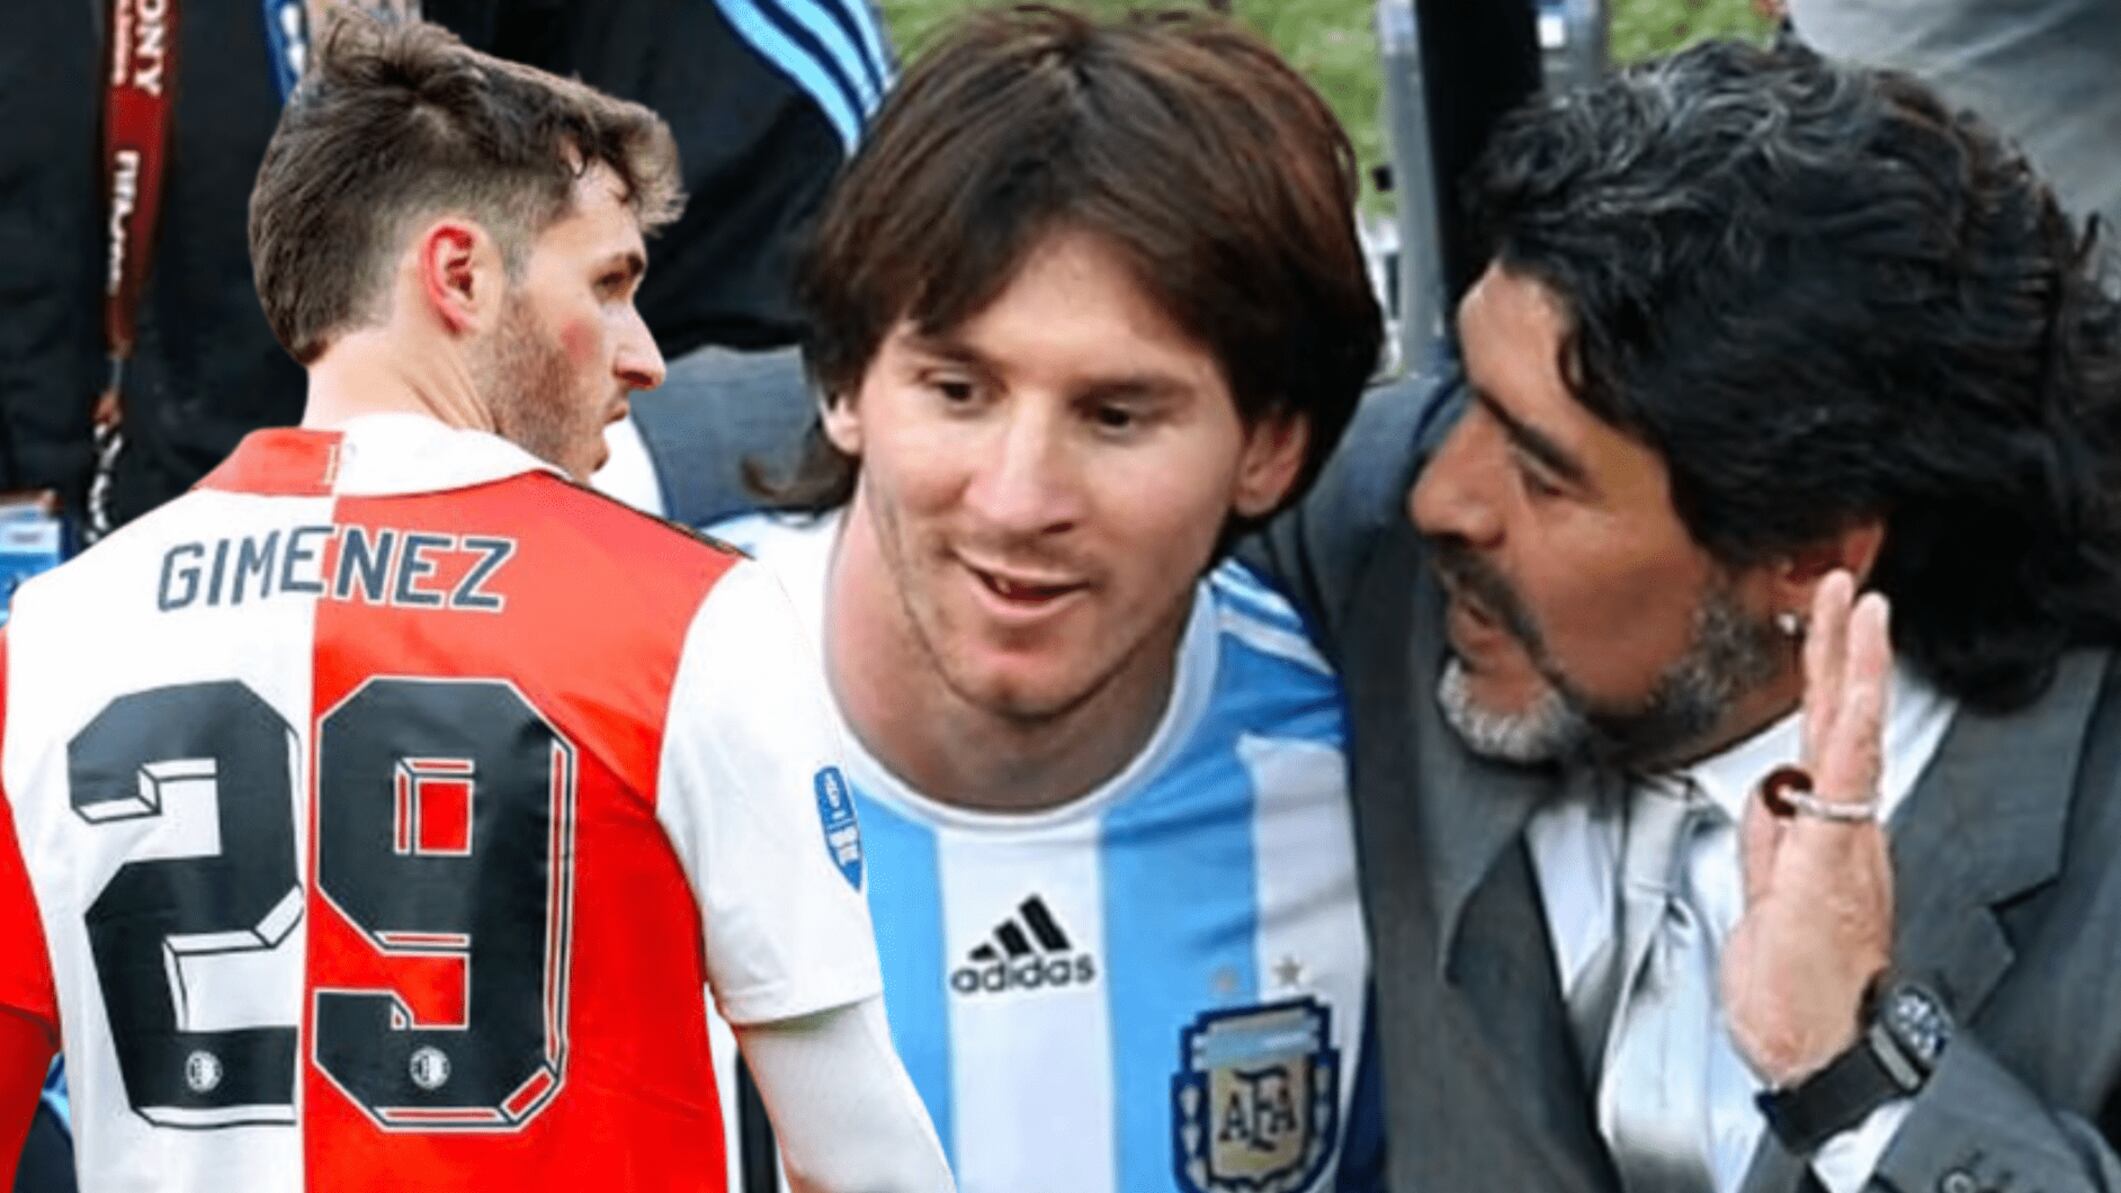 Jugó con Messi, lo dirigió Maradona y ahora a los pies de Giménez en Feyenoord